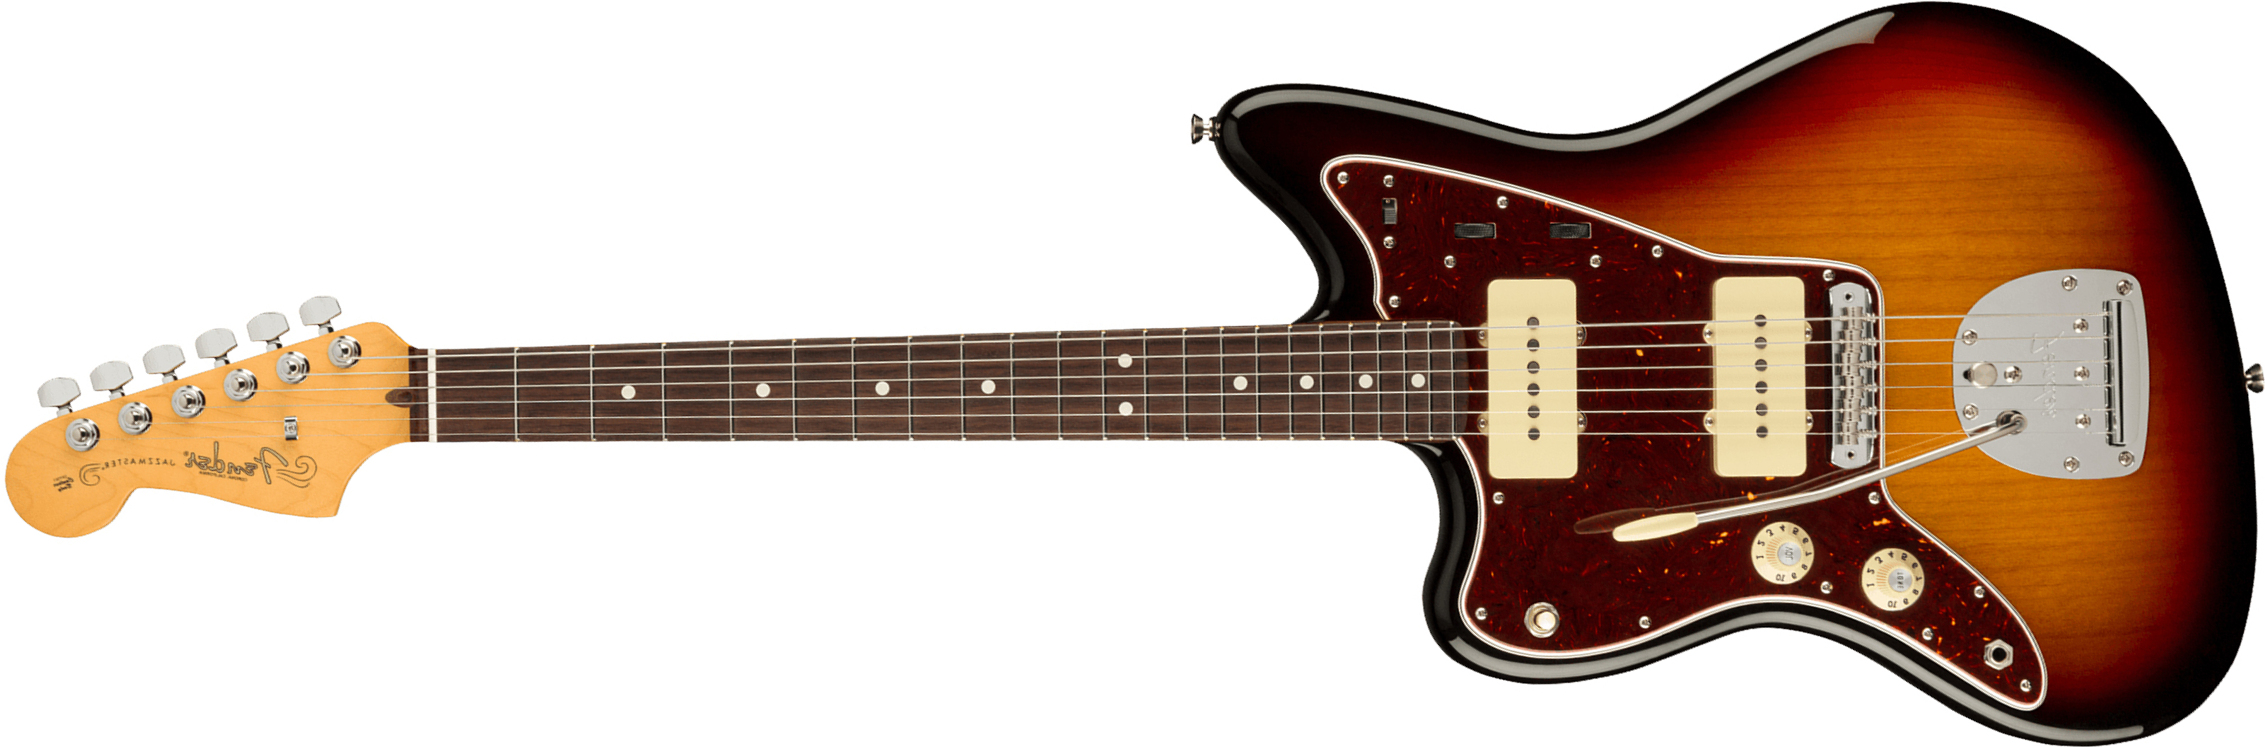 Fender Jazzmaster American Professional Ii Lh Gaucher Usa Rw - 3-color Sunburst - E-Gitarre für Linkshänder - Main picture